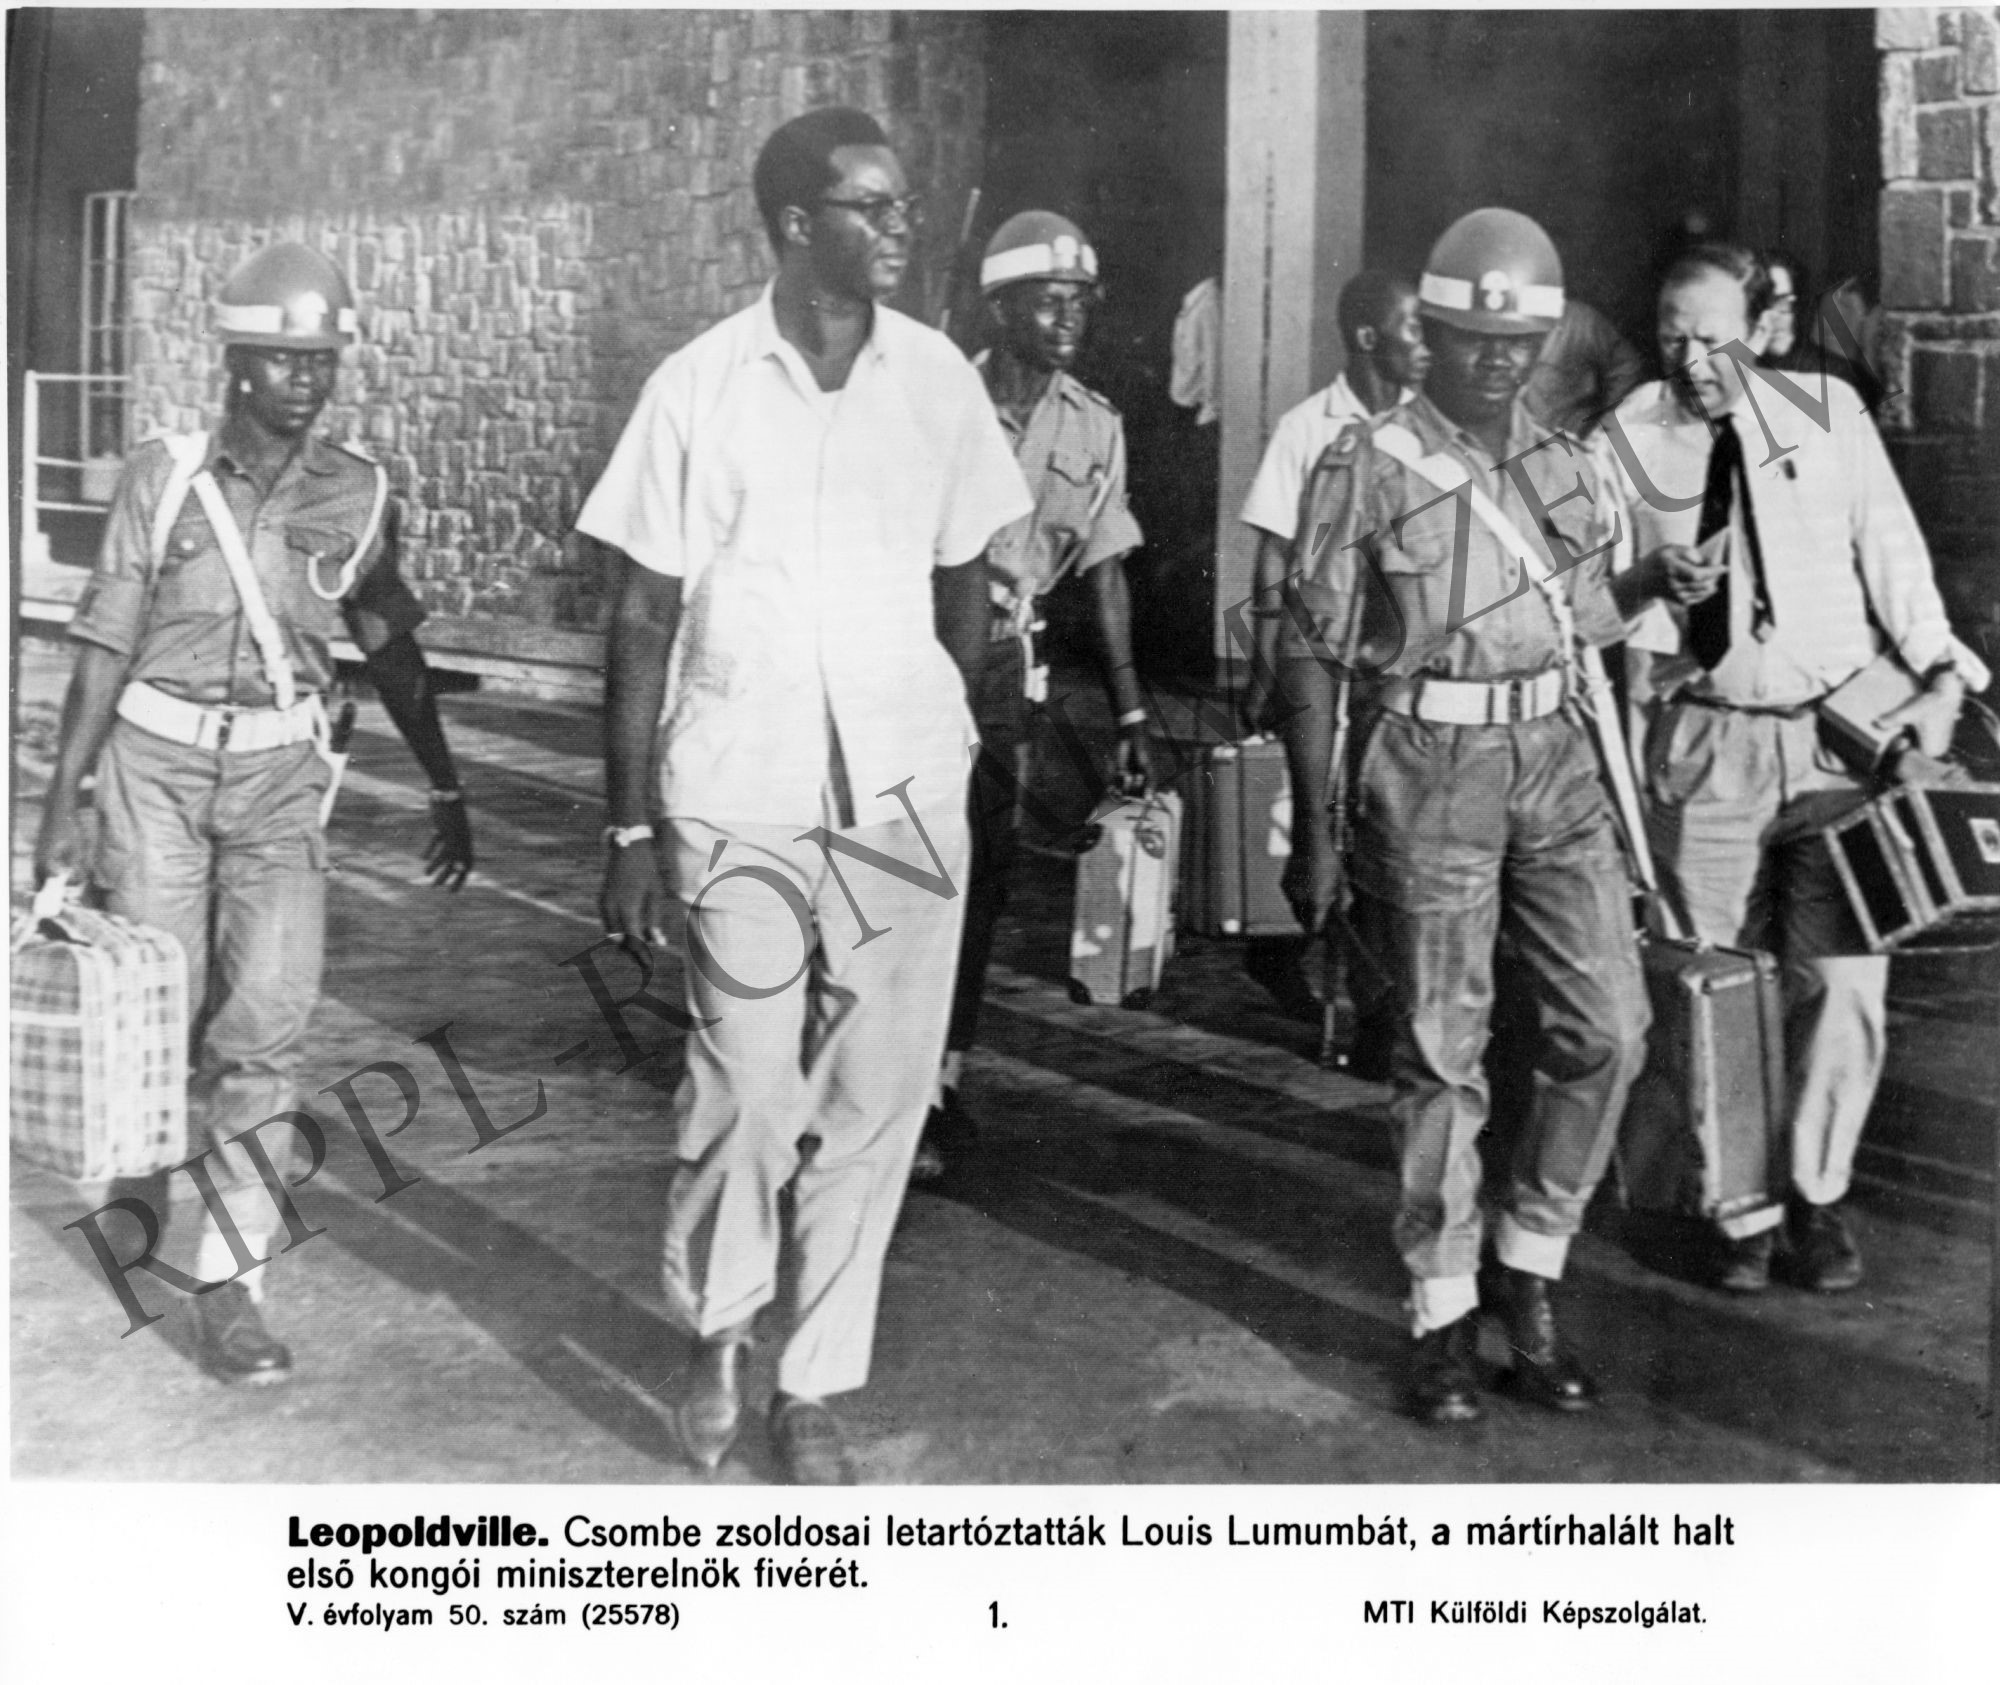 Csombe zsoldosai letartóztatták Louis Lumumbát,a mártírhalált halt kongói miniszterelnök fivérét. (Rippl-Rónai Múzeum CC BY-NC-SA)